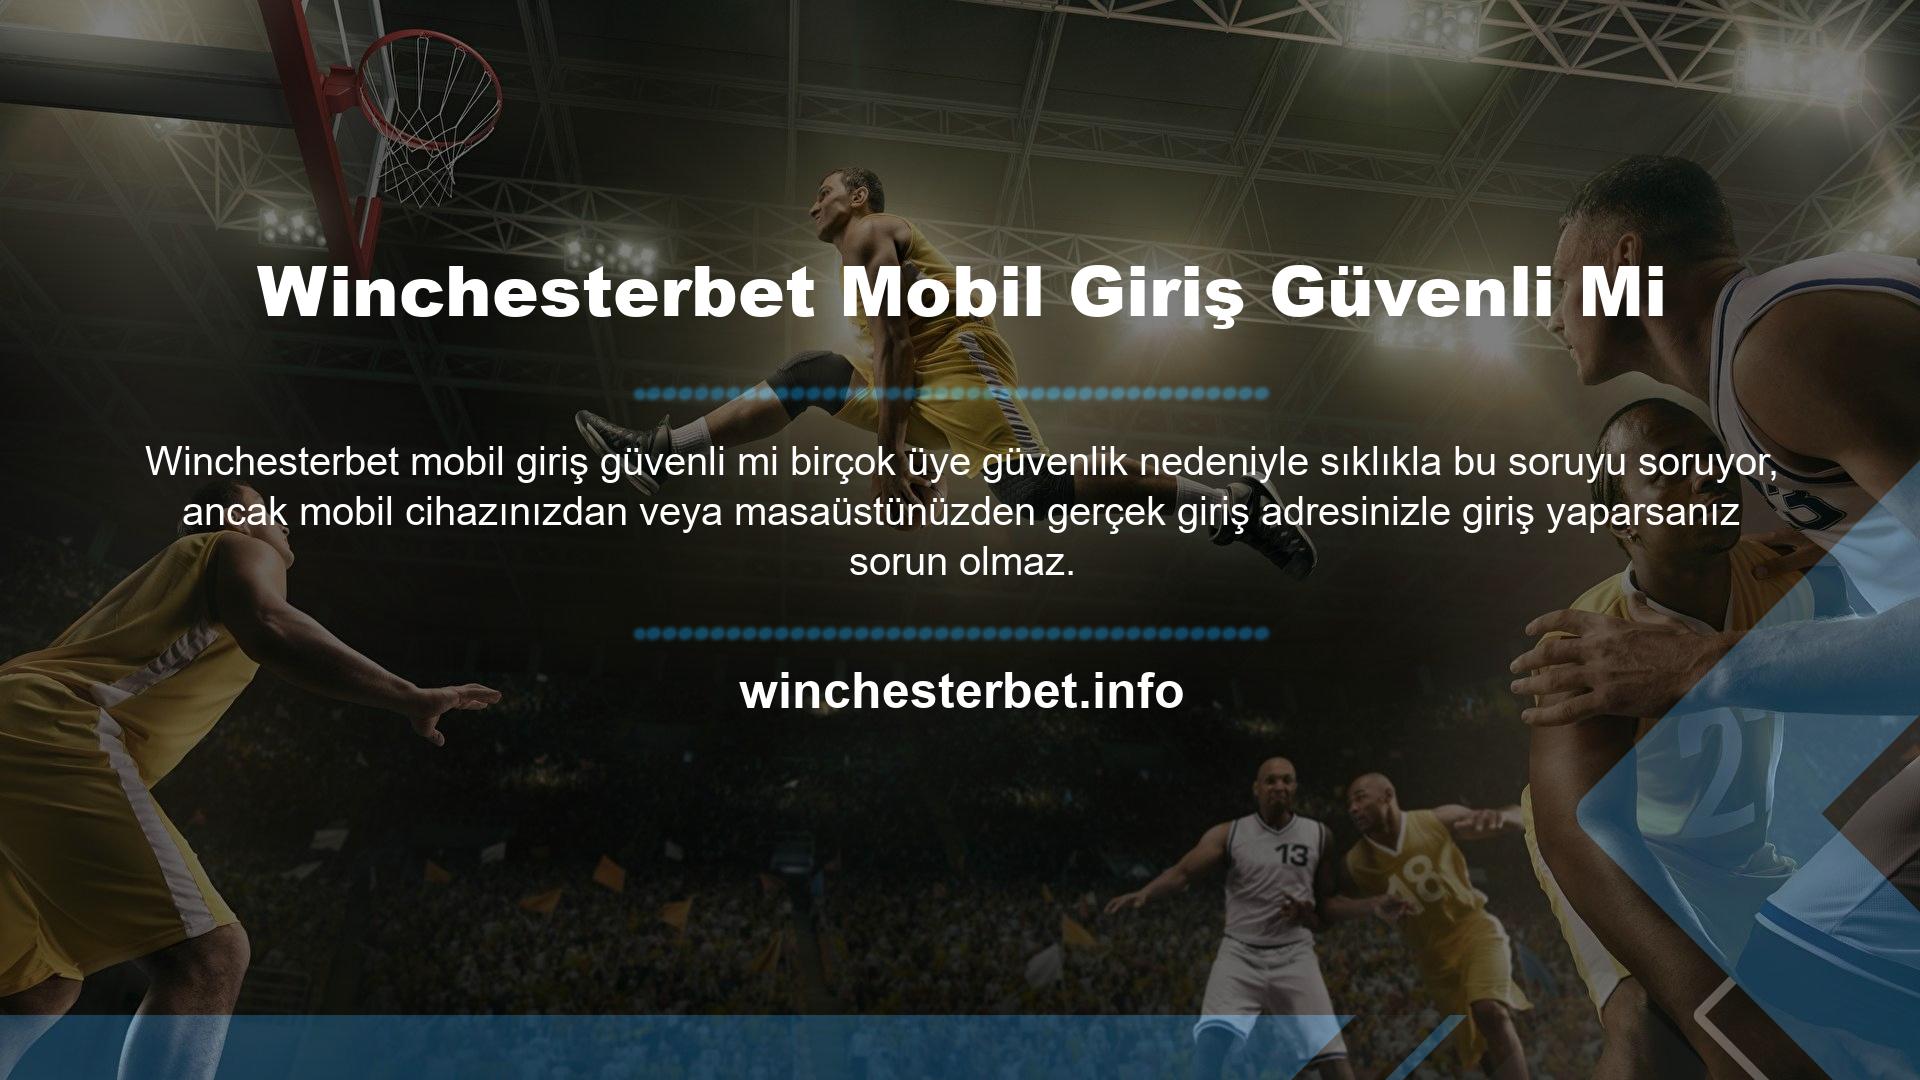 Web sitemiz benzersizdir Asıl web sitesi Winchesterbet, bu da cep telefonları için güvenilir oyunlar sunduğumuz anlamına gelir